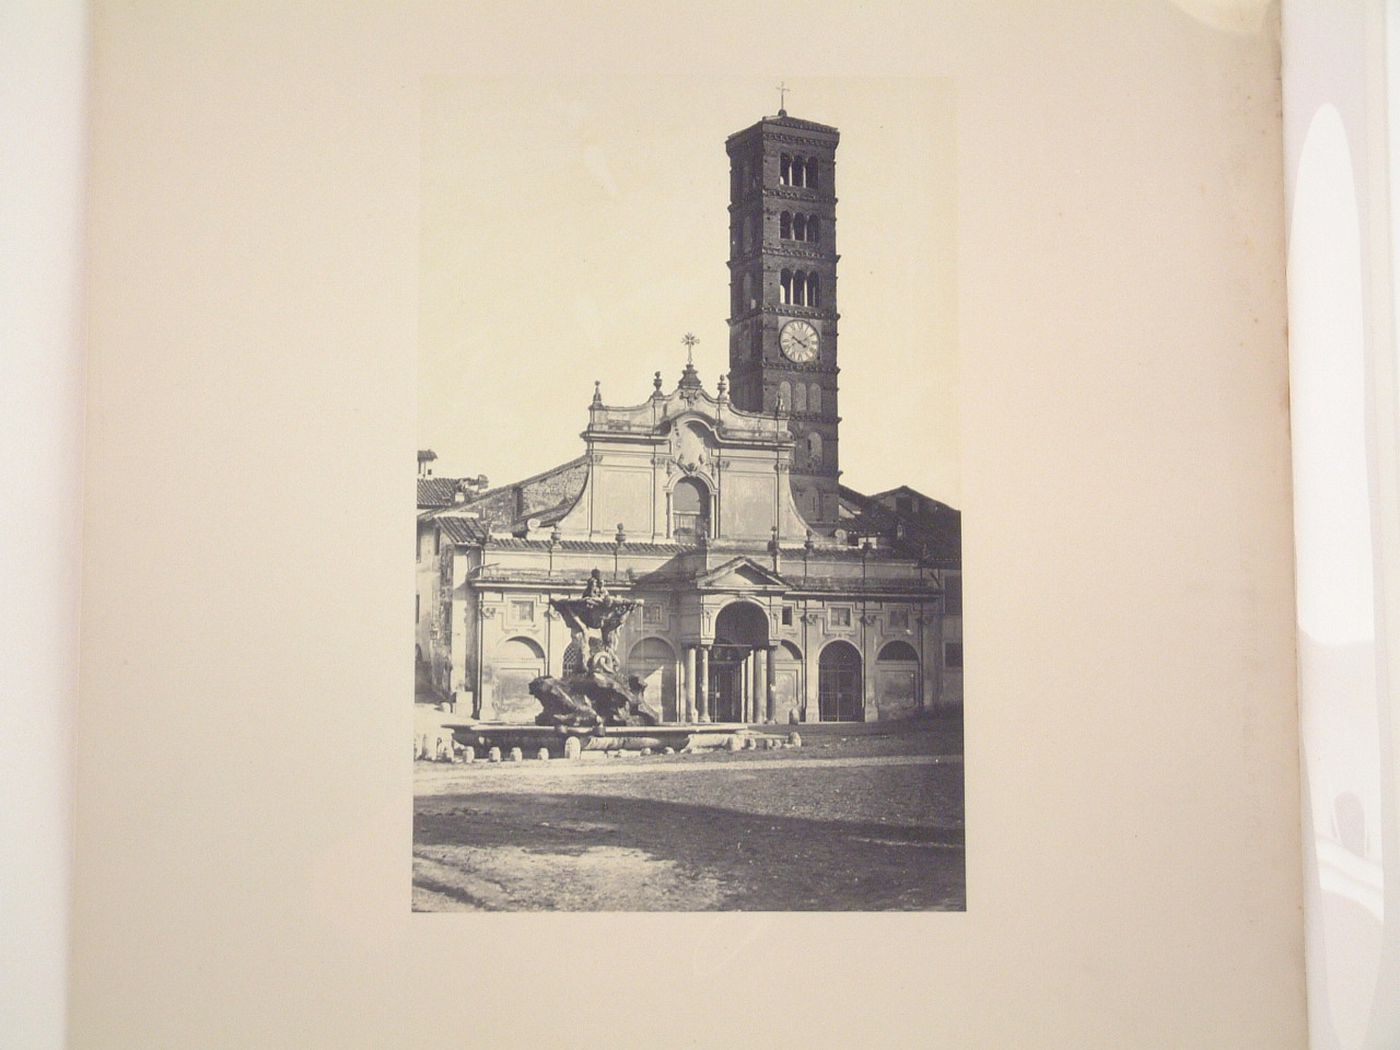 View of Santa Maria in Cosmedin and the Piazza Bocca della Verità, Rome, Italy